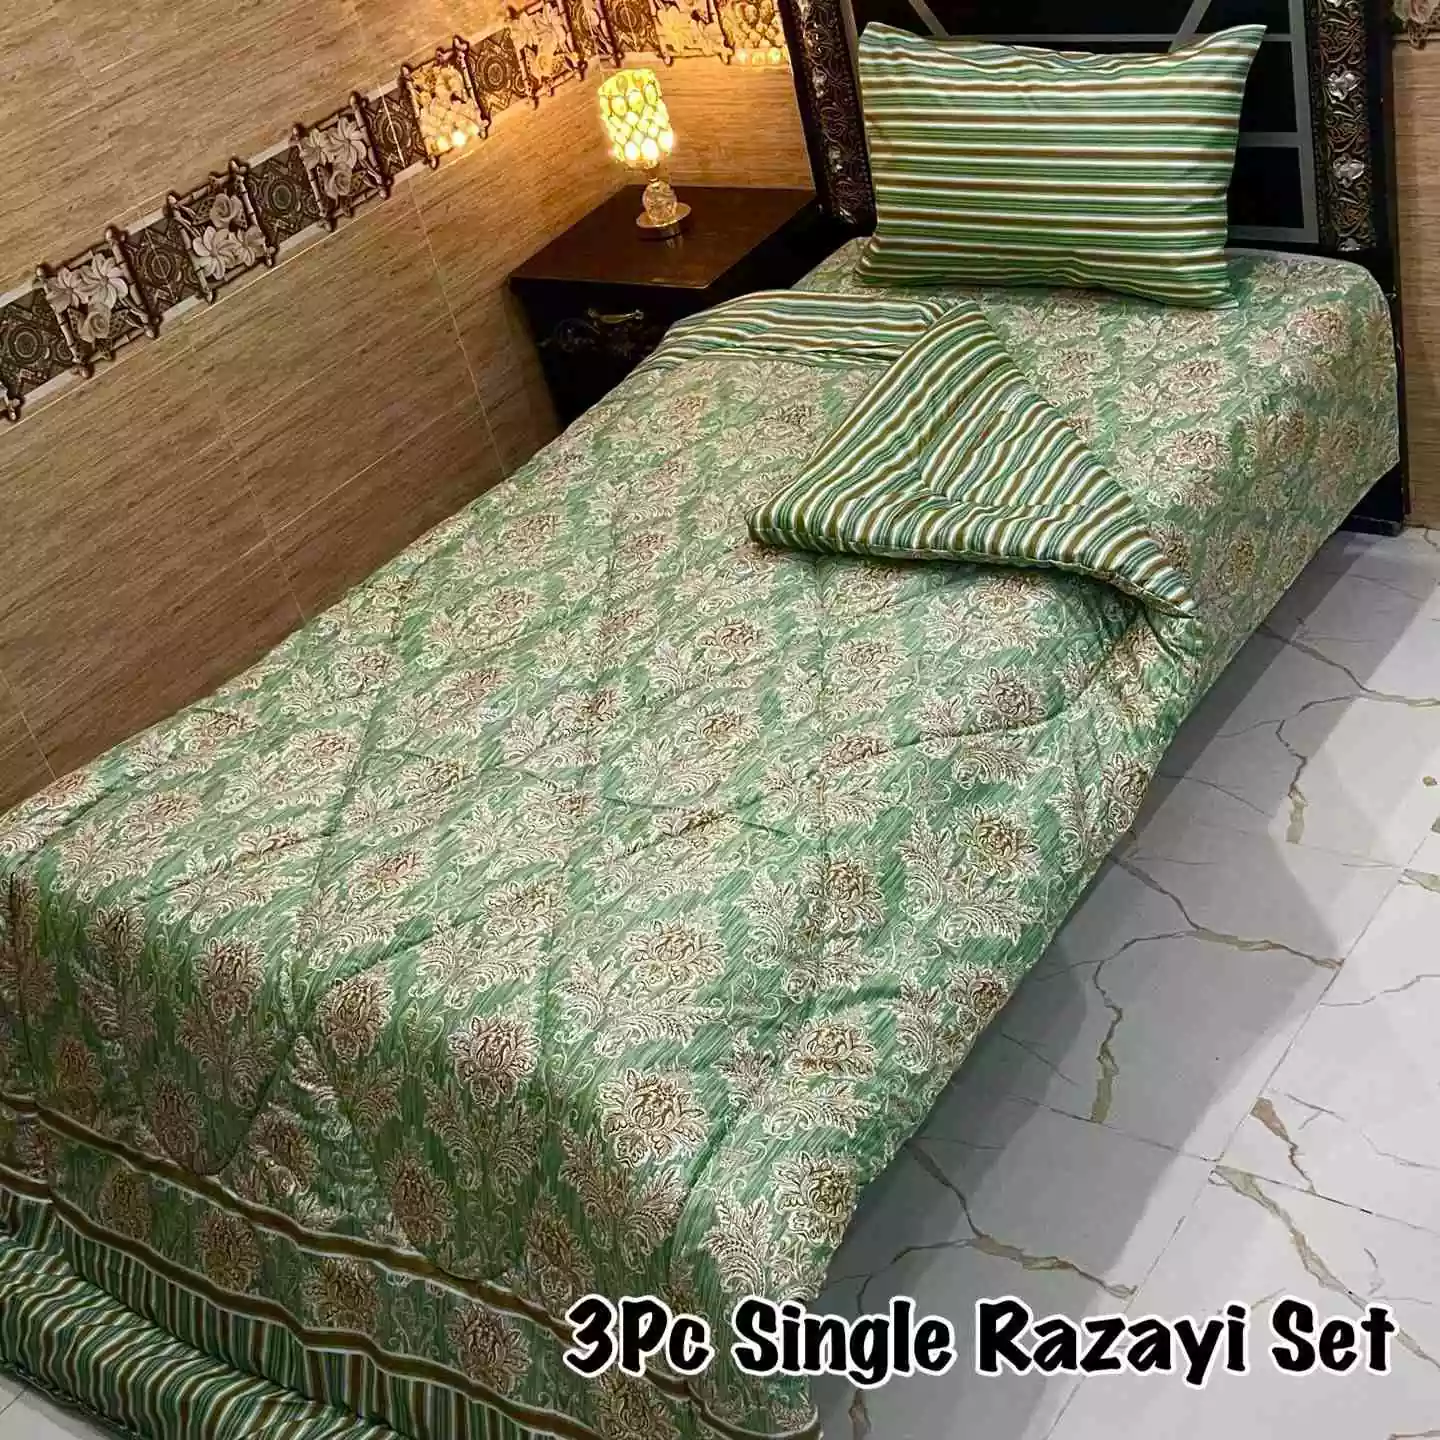 DF-VRSSB-6: DFY 3Pc Single Bed Vicky Razai Set